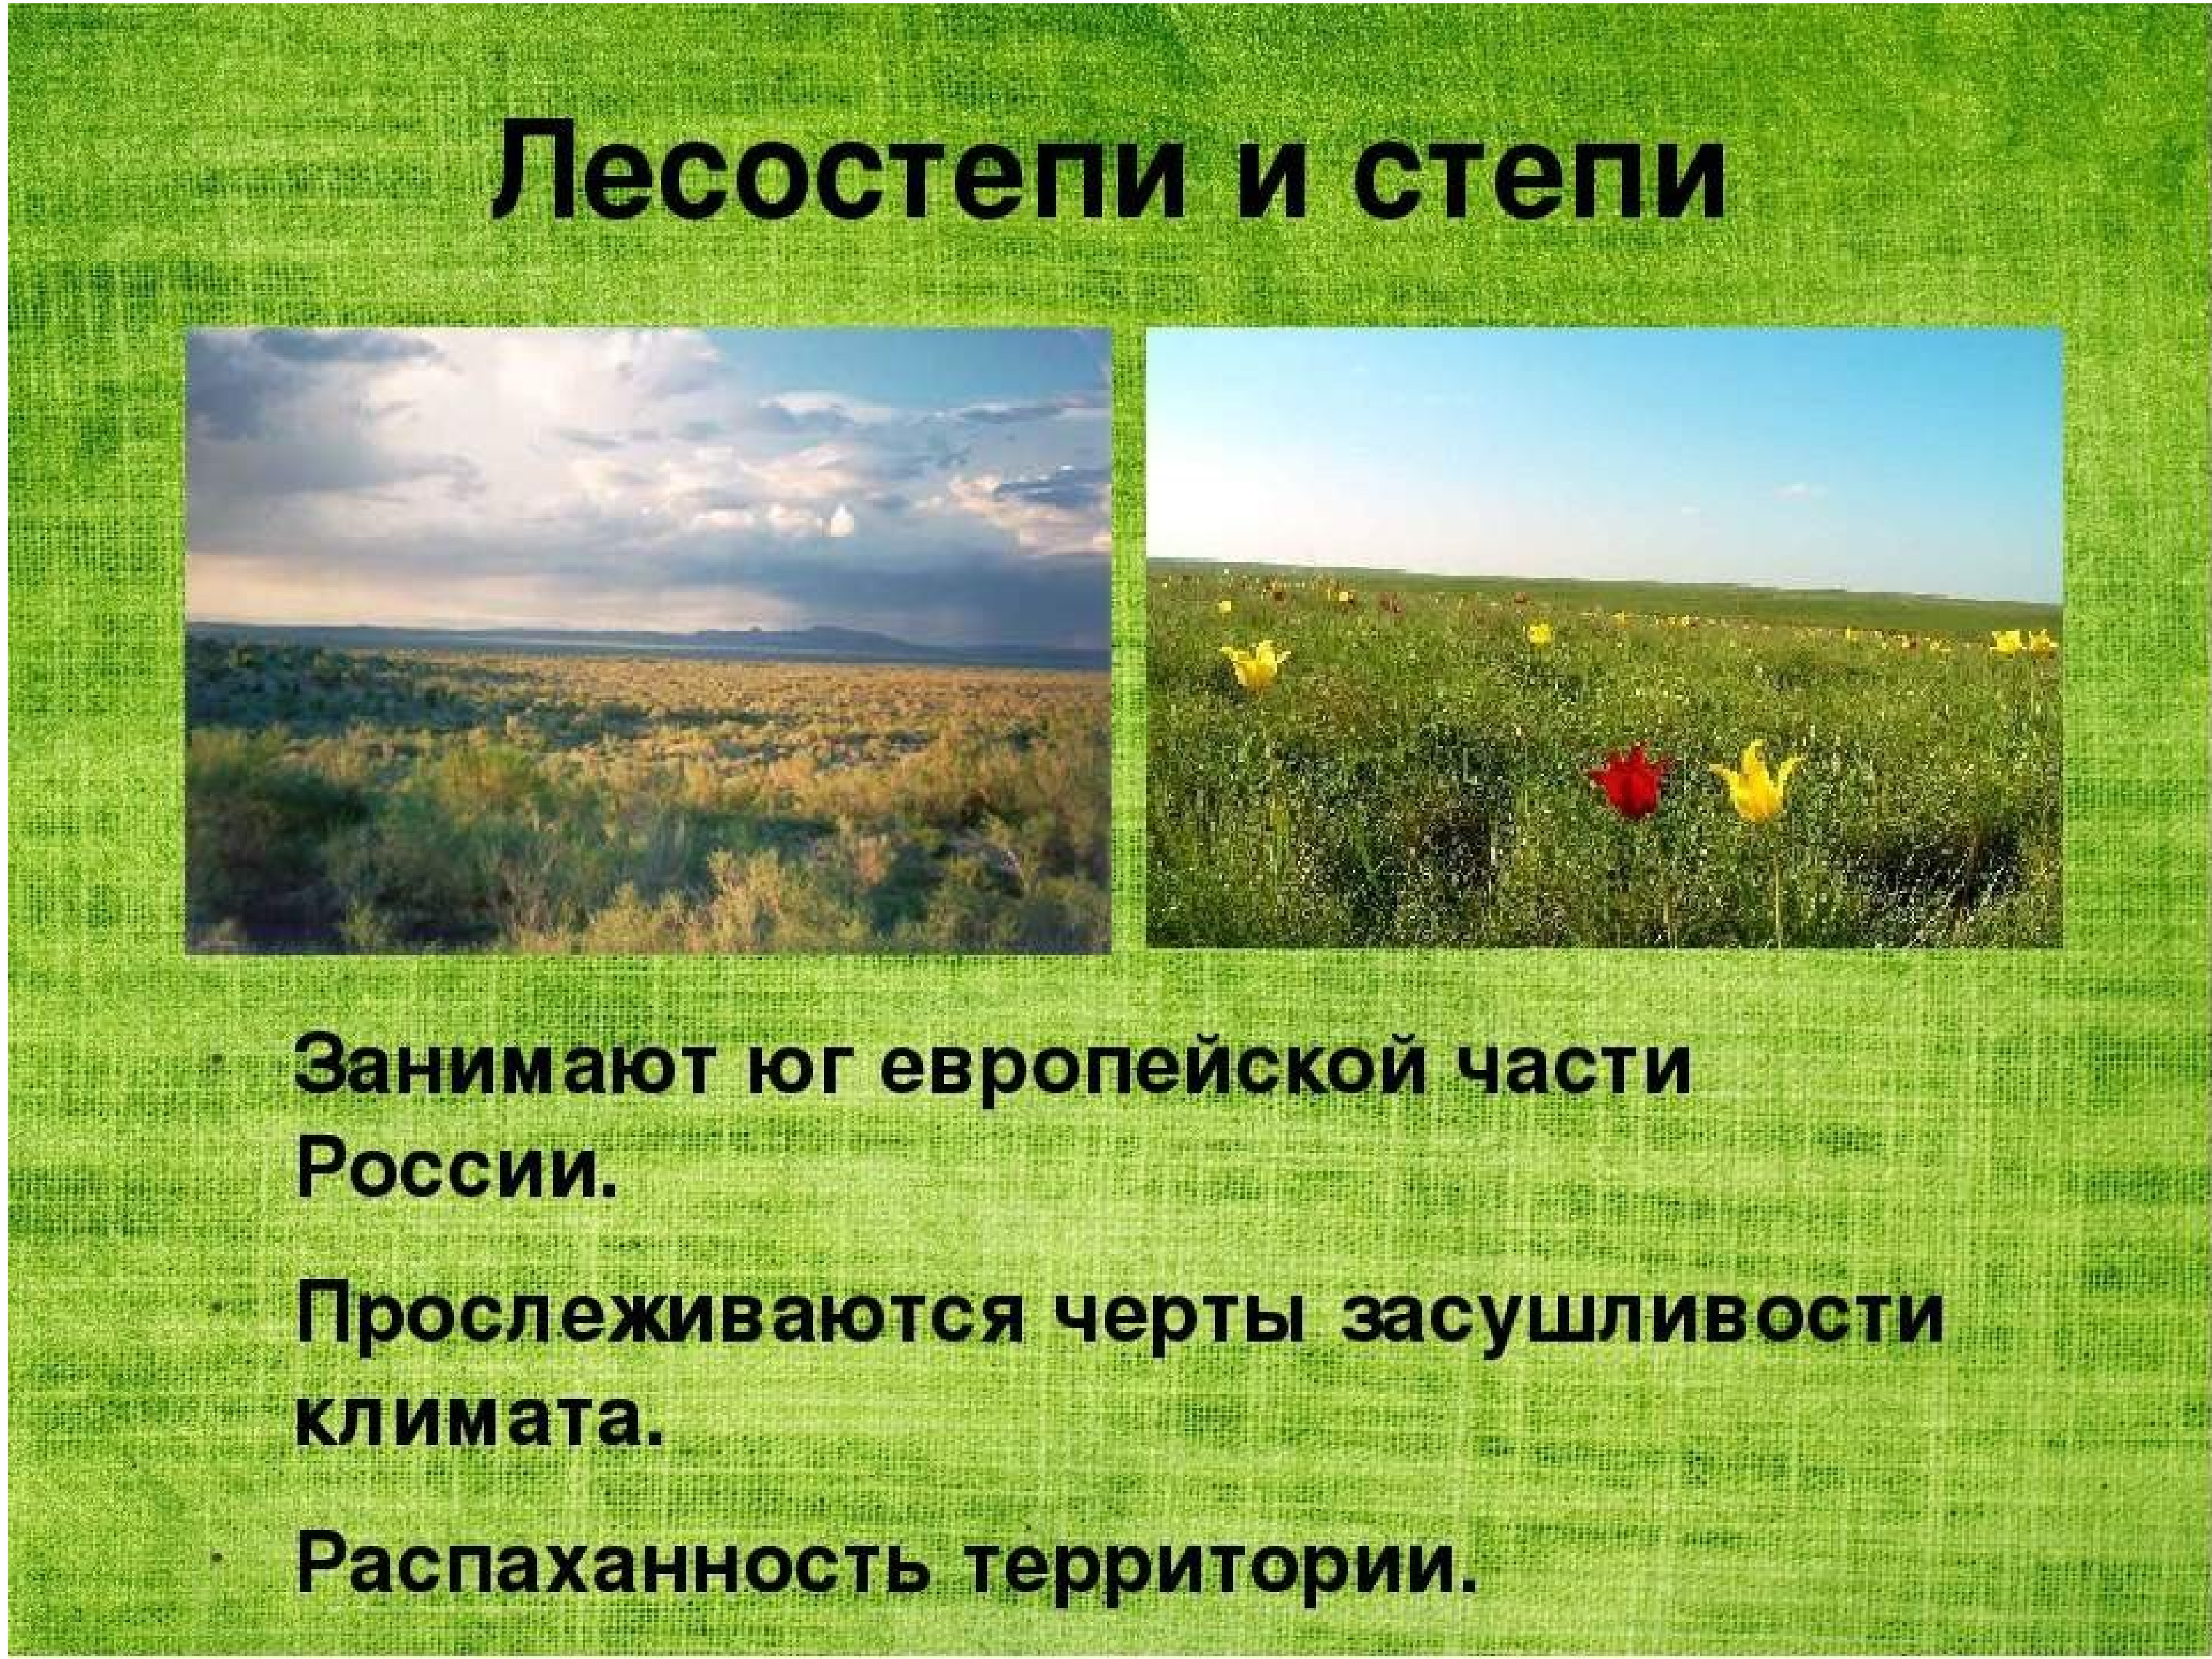 Природные особенности лесостепи и степи. Климат лесостепной и Степной зоны. Зона лесостепи. Степи и лесостепи России. Зоны лесостепей и степей.